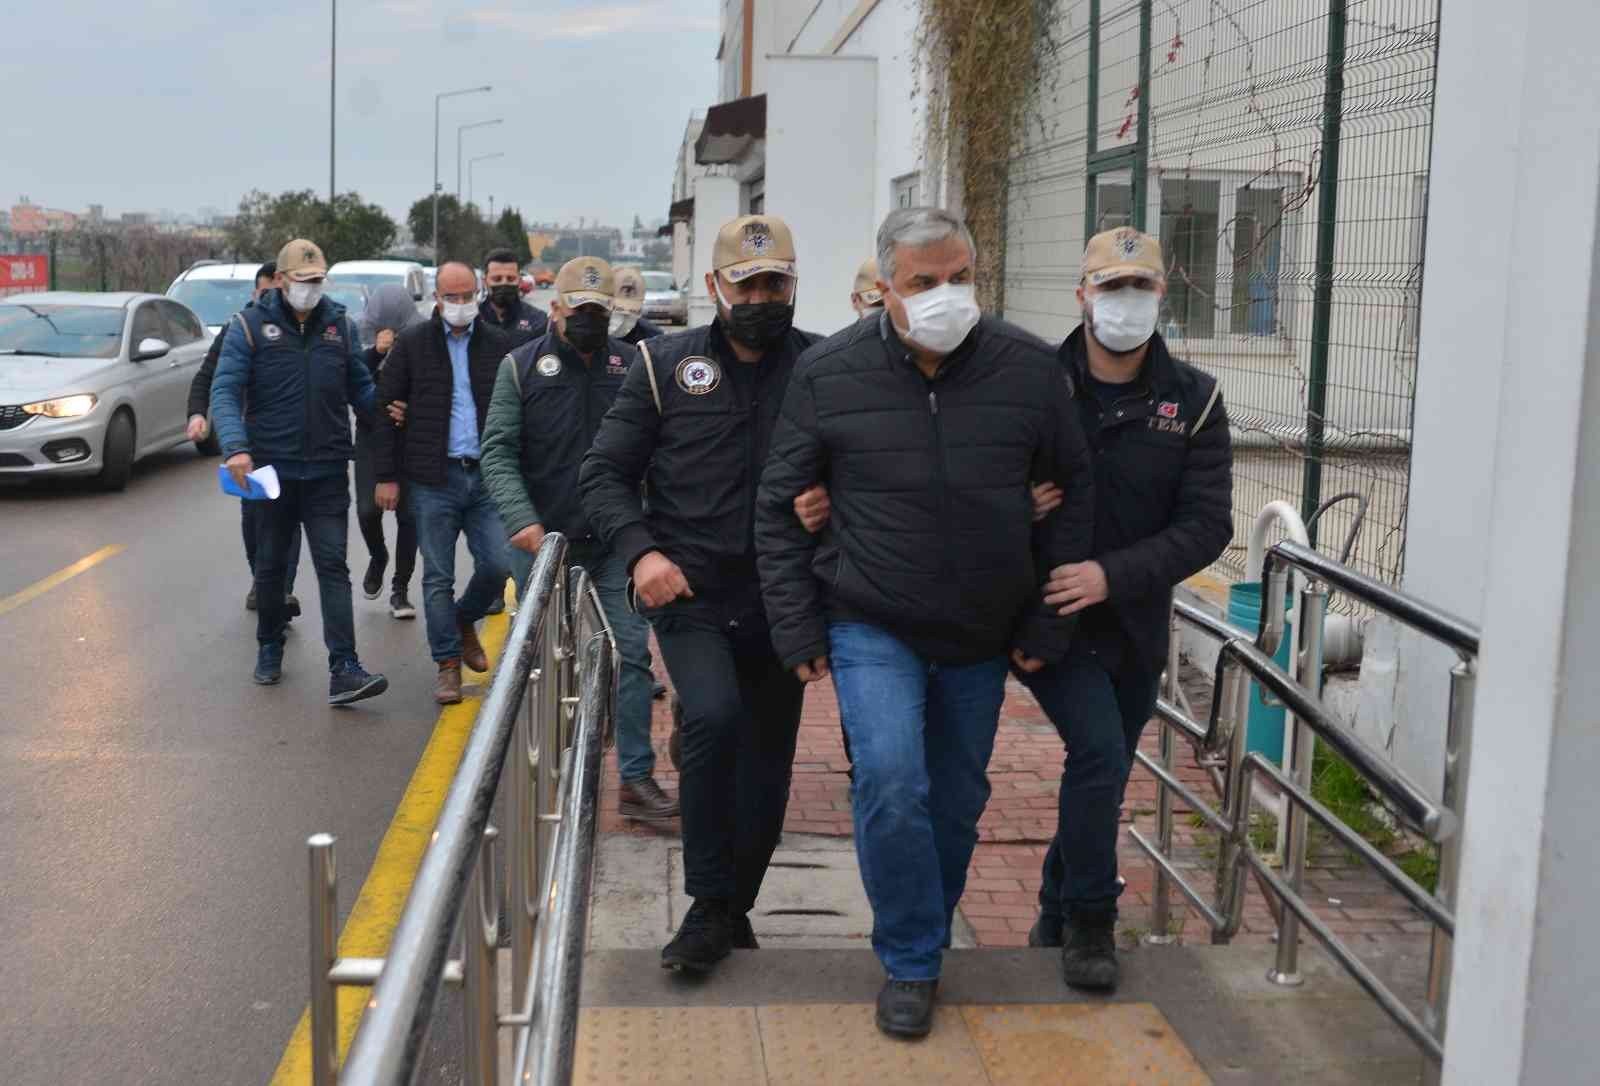 FETÖ’nün KKTC askeri mahrem sorumlusu Adana’da yakalandı #adana